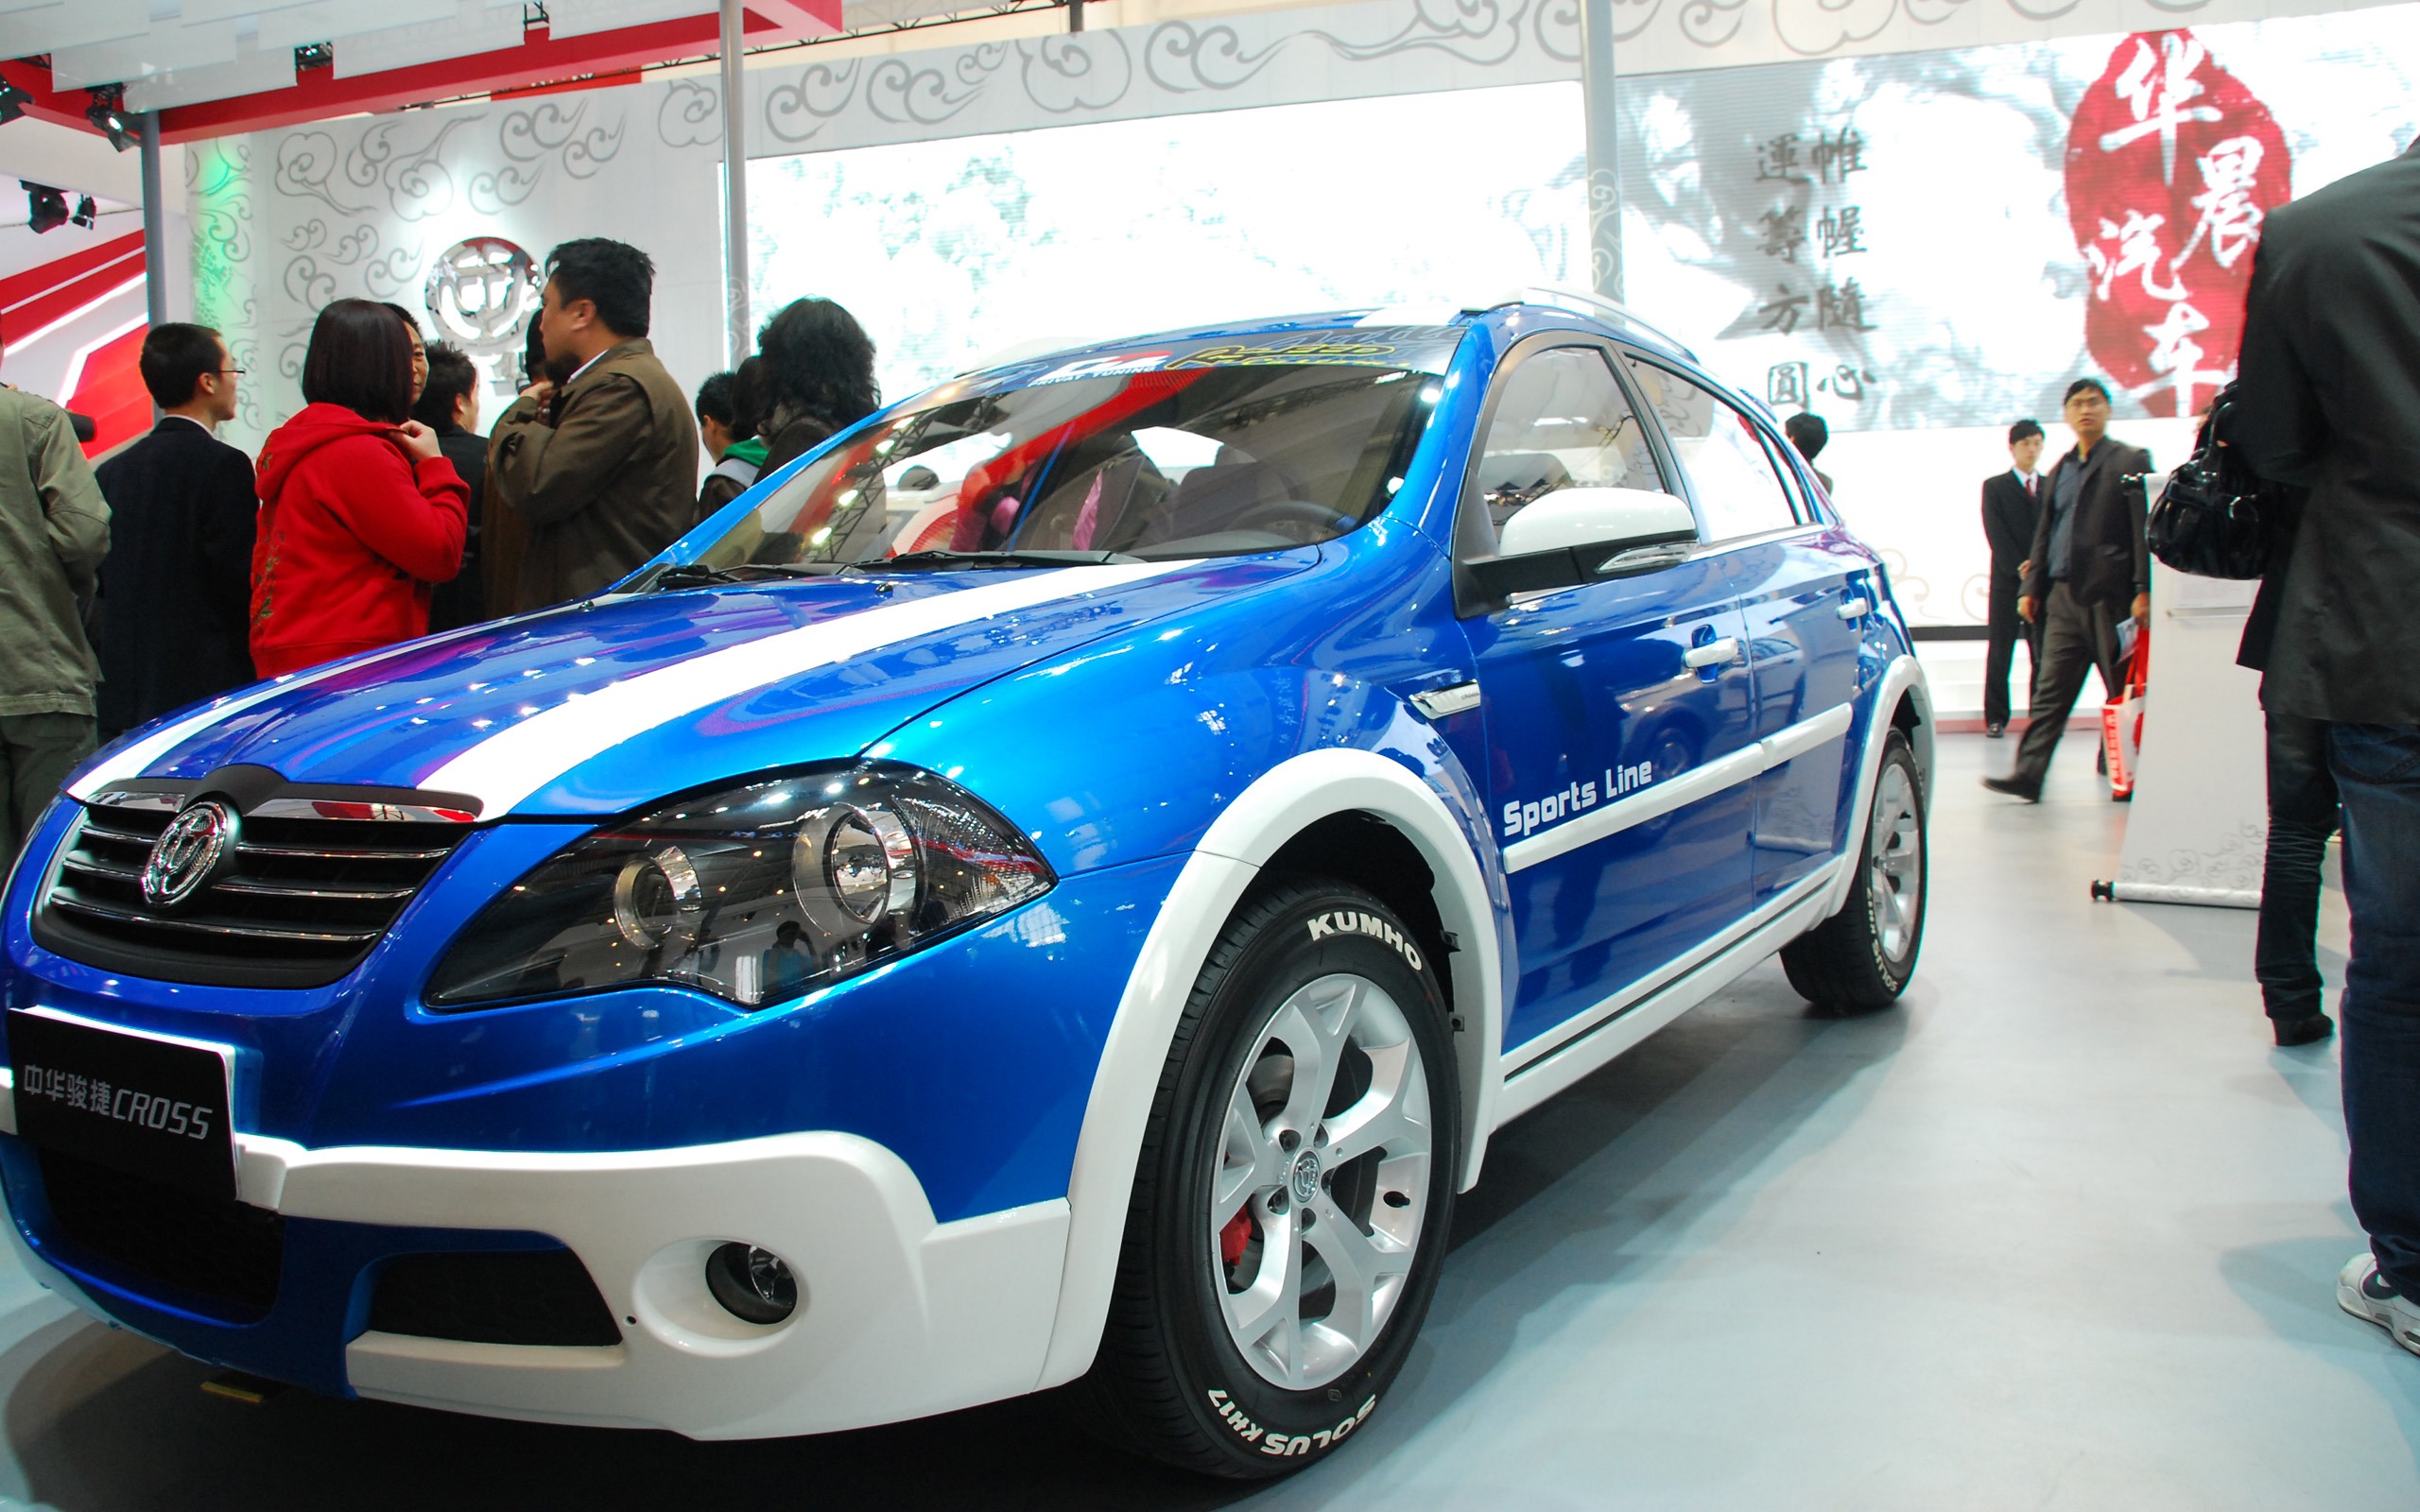 2010北京国际车展(一) (z321x123作品)21 - 2560x1600